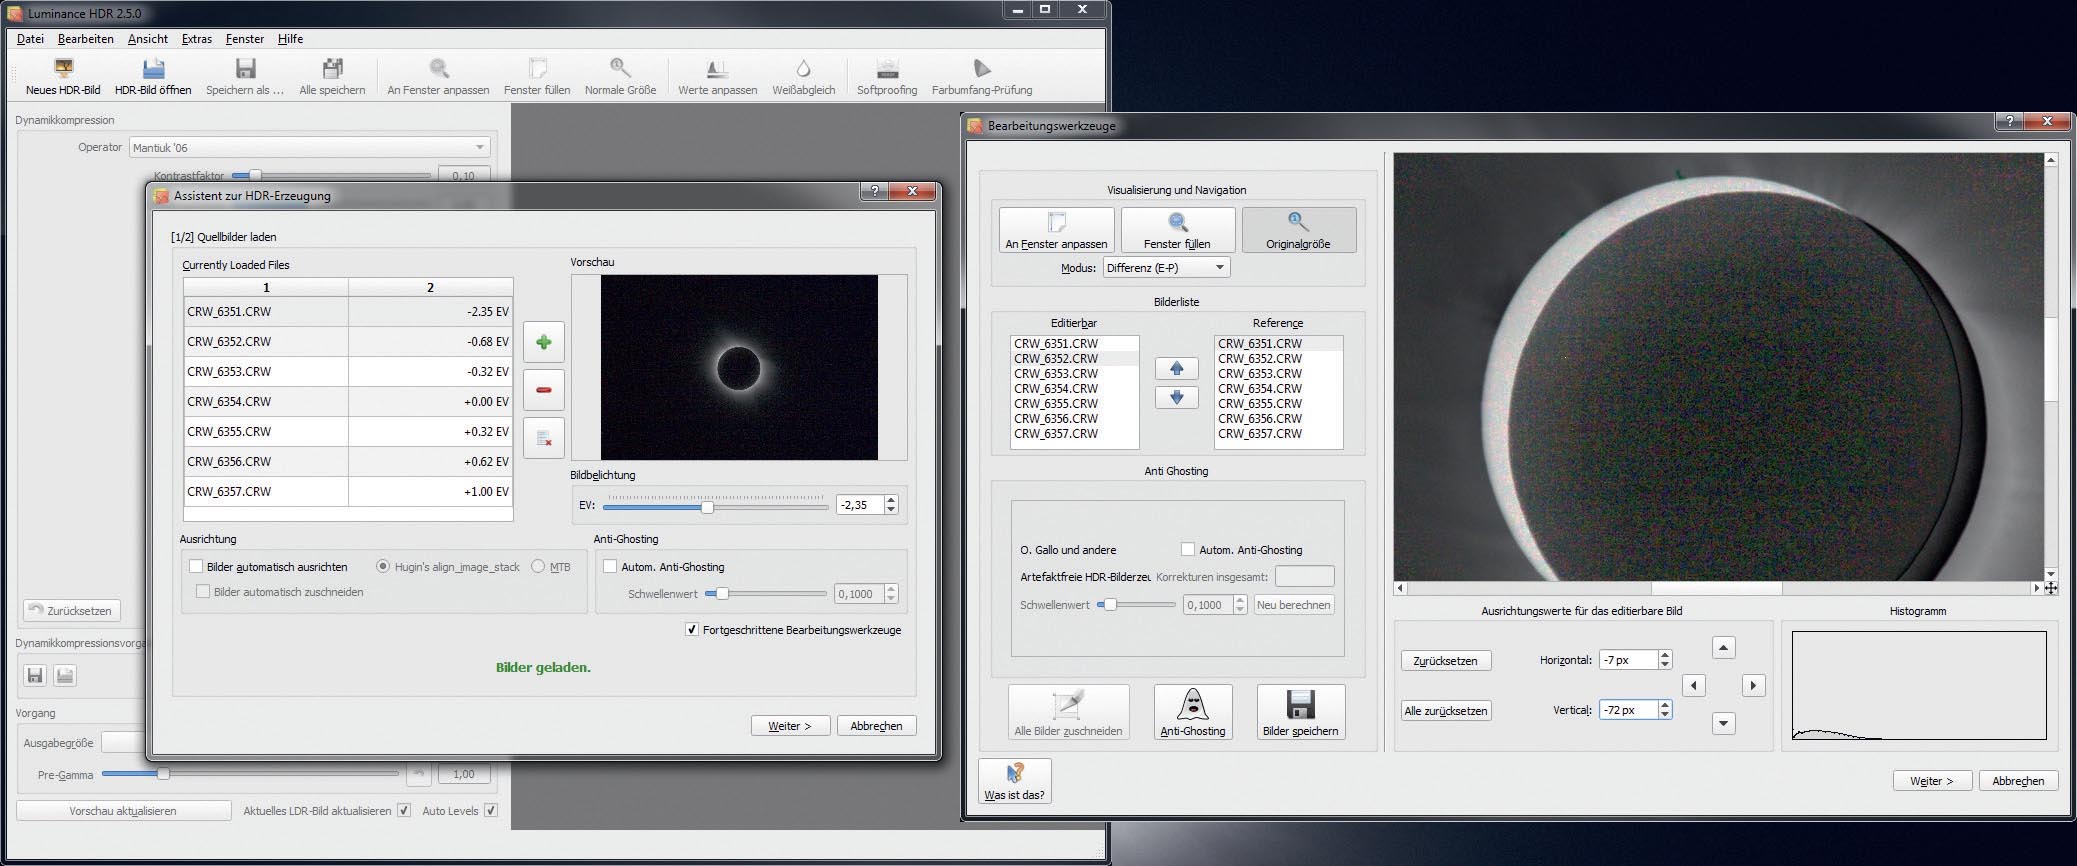 Le programme Luminance HDR, lors de la création d’une nouvelle image HDR. Dans la fenêtre de gauche, on peut charger la série d’images. En dehors du cochage de « Outils de traitement avancés », aucun autre réglage n’est nécessaire. La fenêtre de droite permet de vérifier le décalage des images et d’aligner les images. M. Weigand